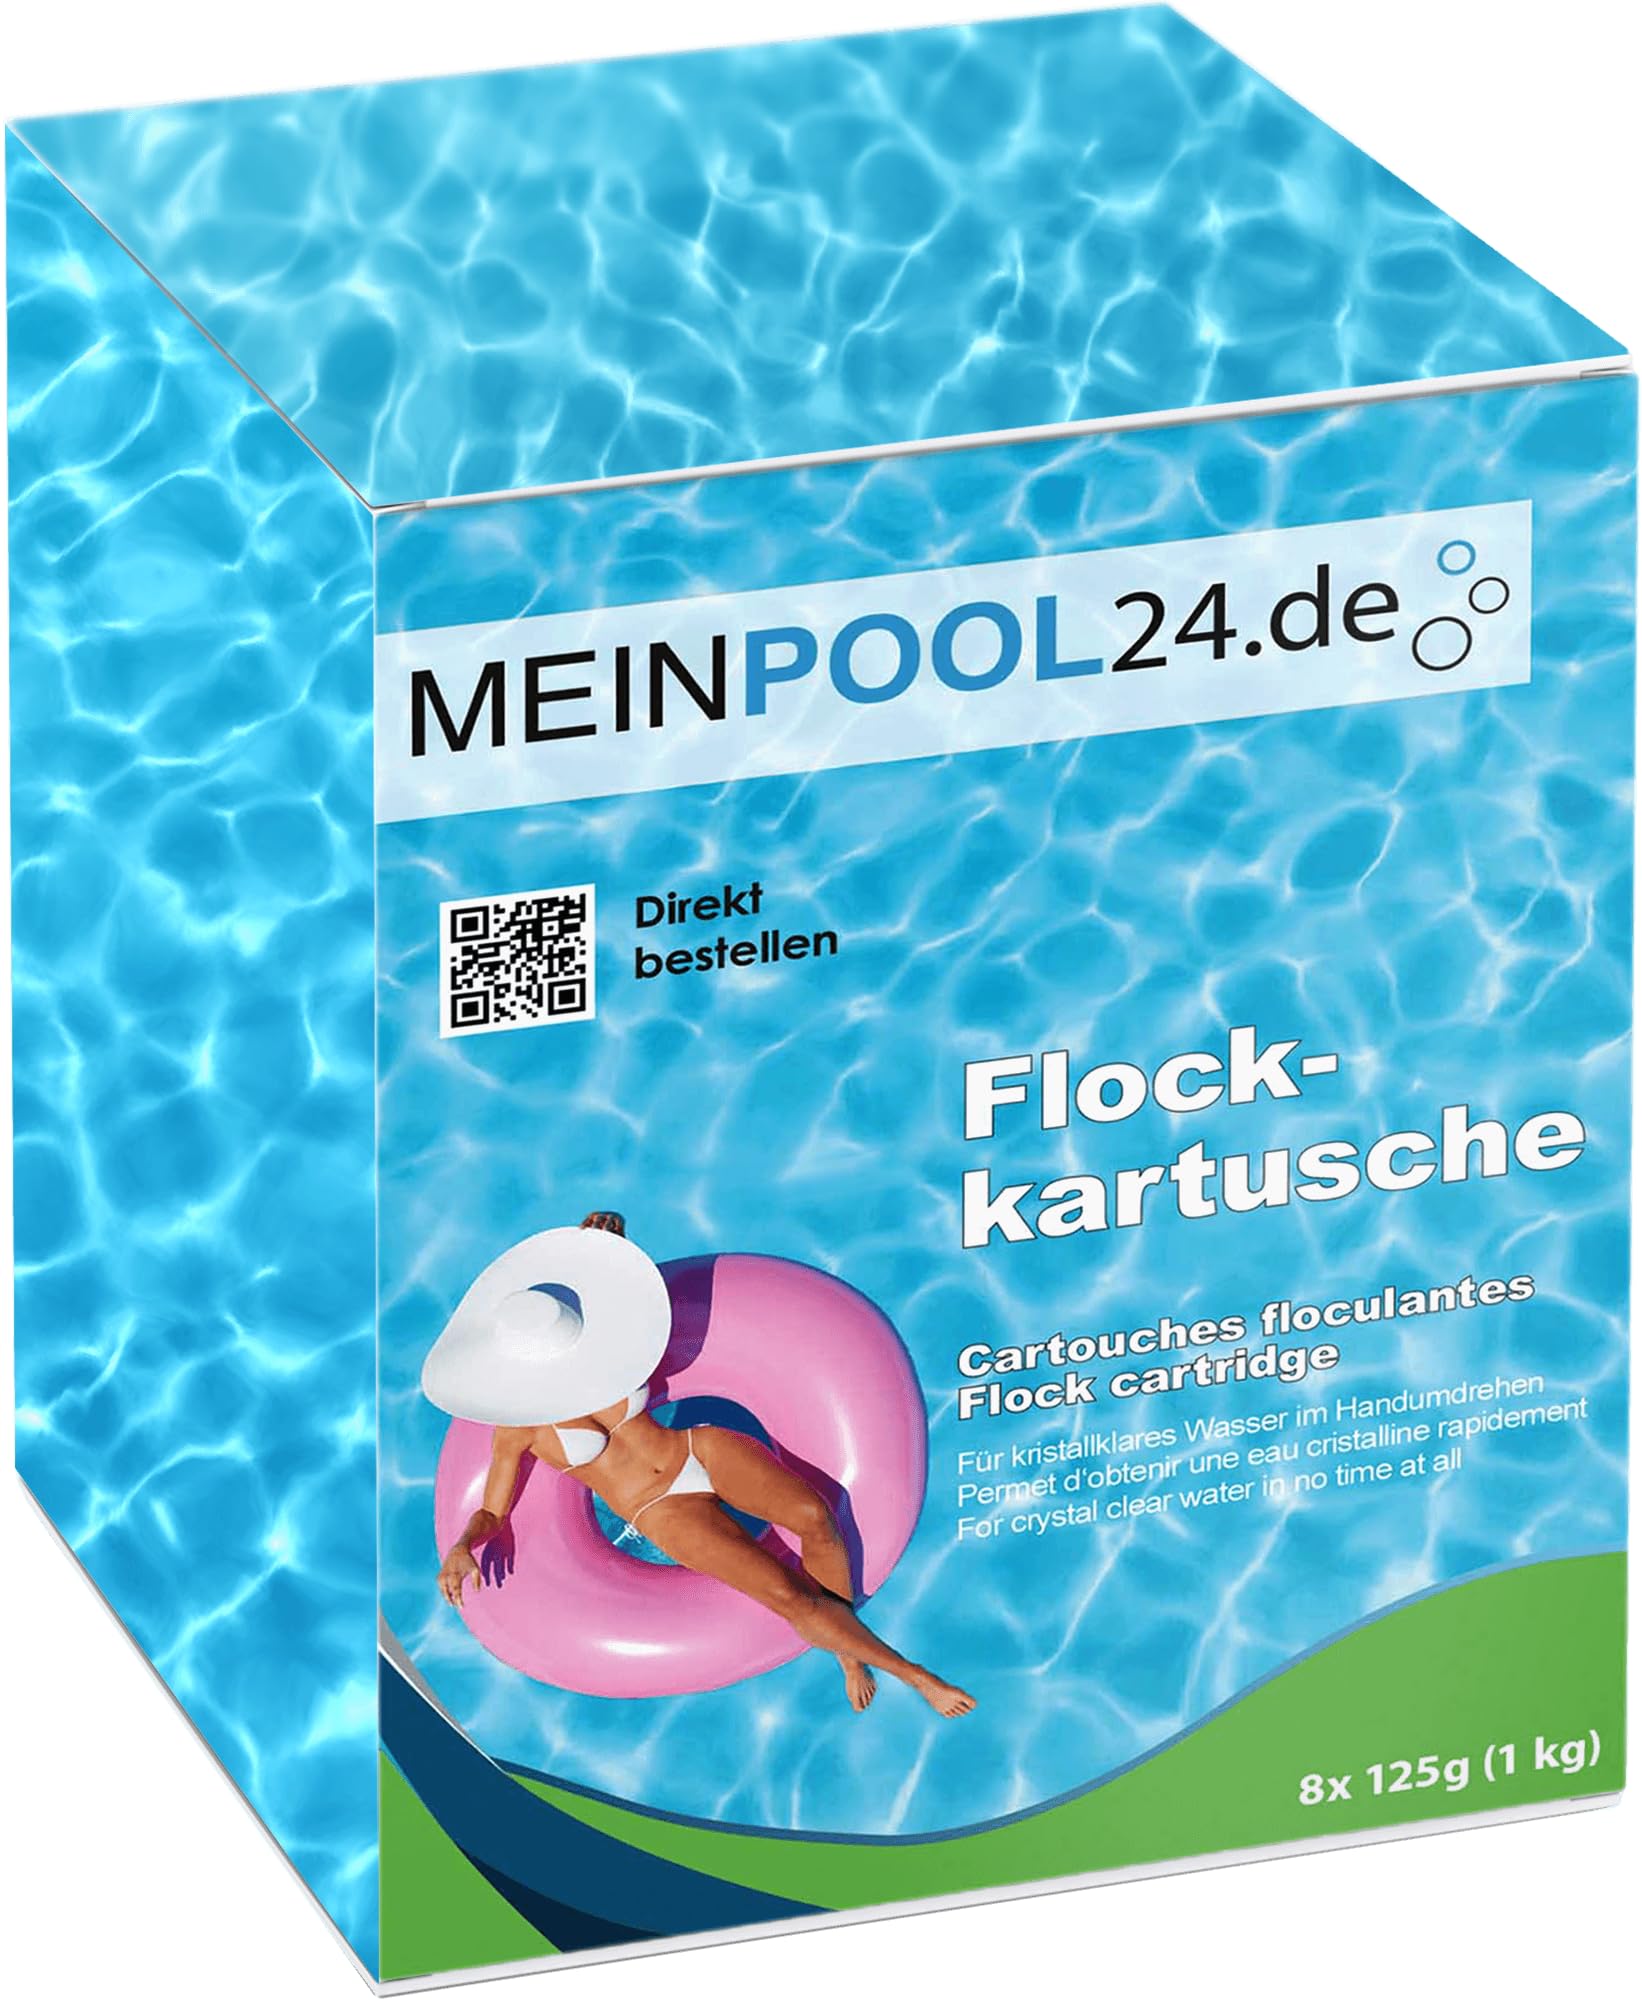 Meinpool24.de 12x1 kg Flockkartuschen Flockungs-Kartuschen für kristallklares Wasser entfernt feinste Schmutzteilchen im Pool